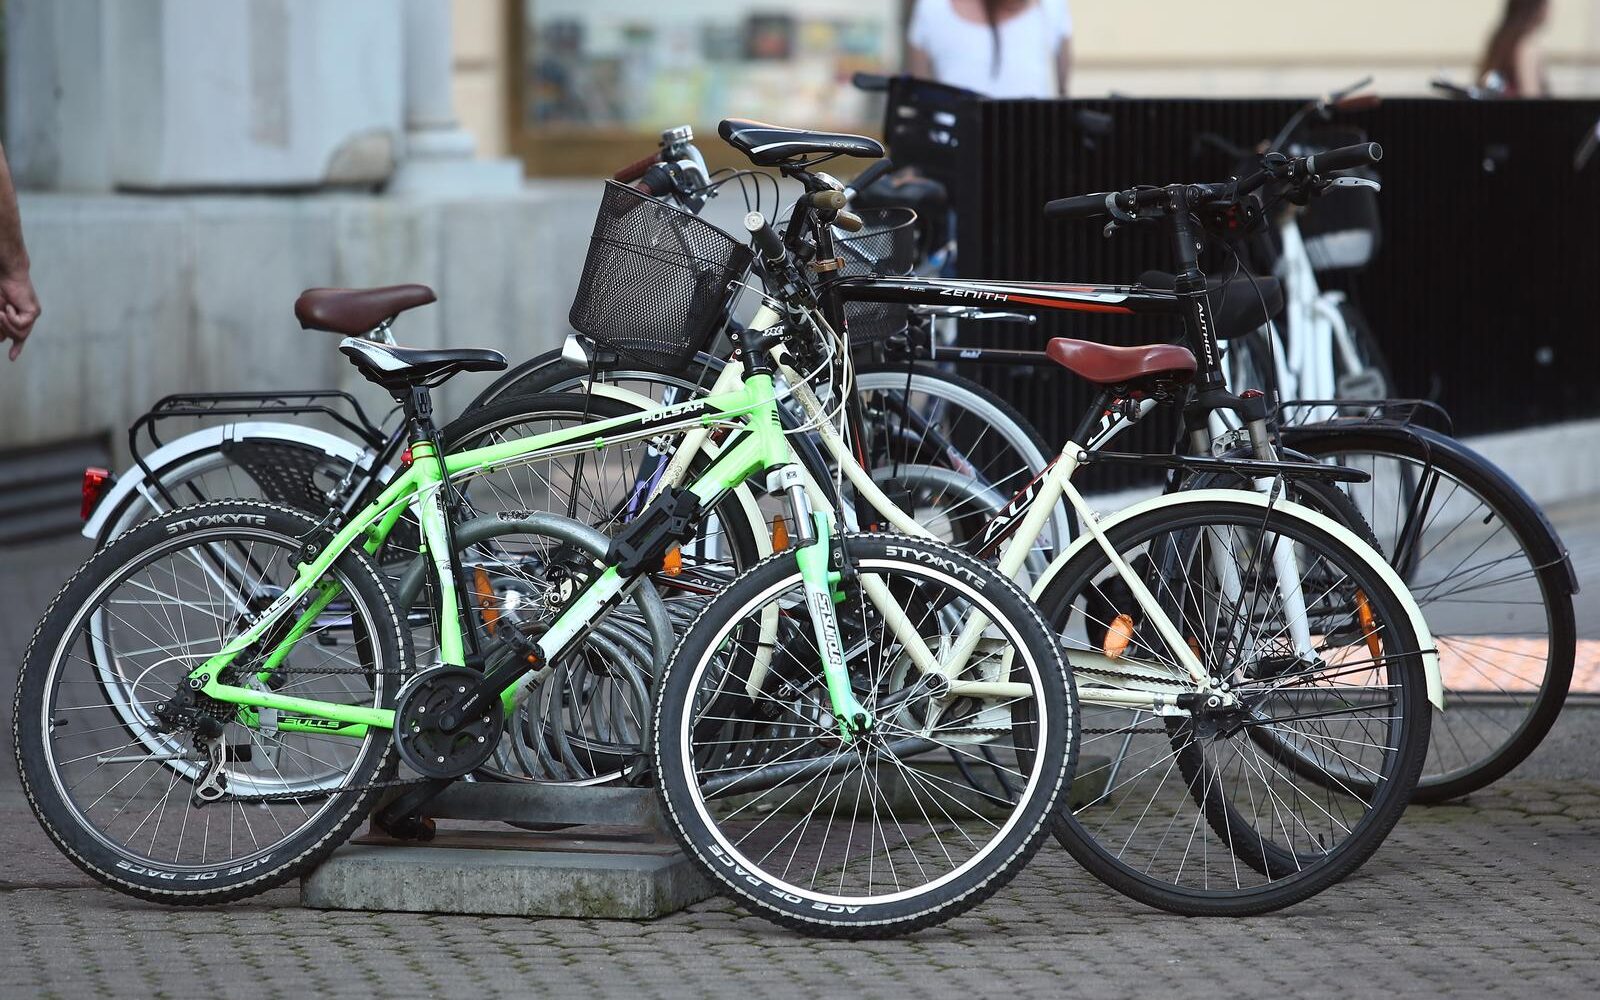 Bolje sutra za bicikliste: do 2027. planira se 167 milijuna eura ulaganja